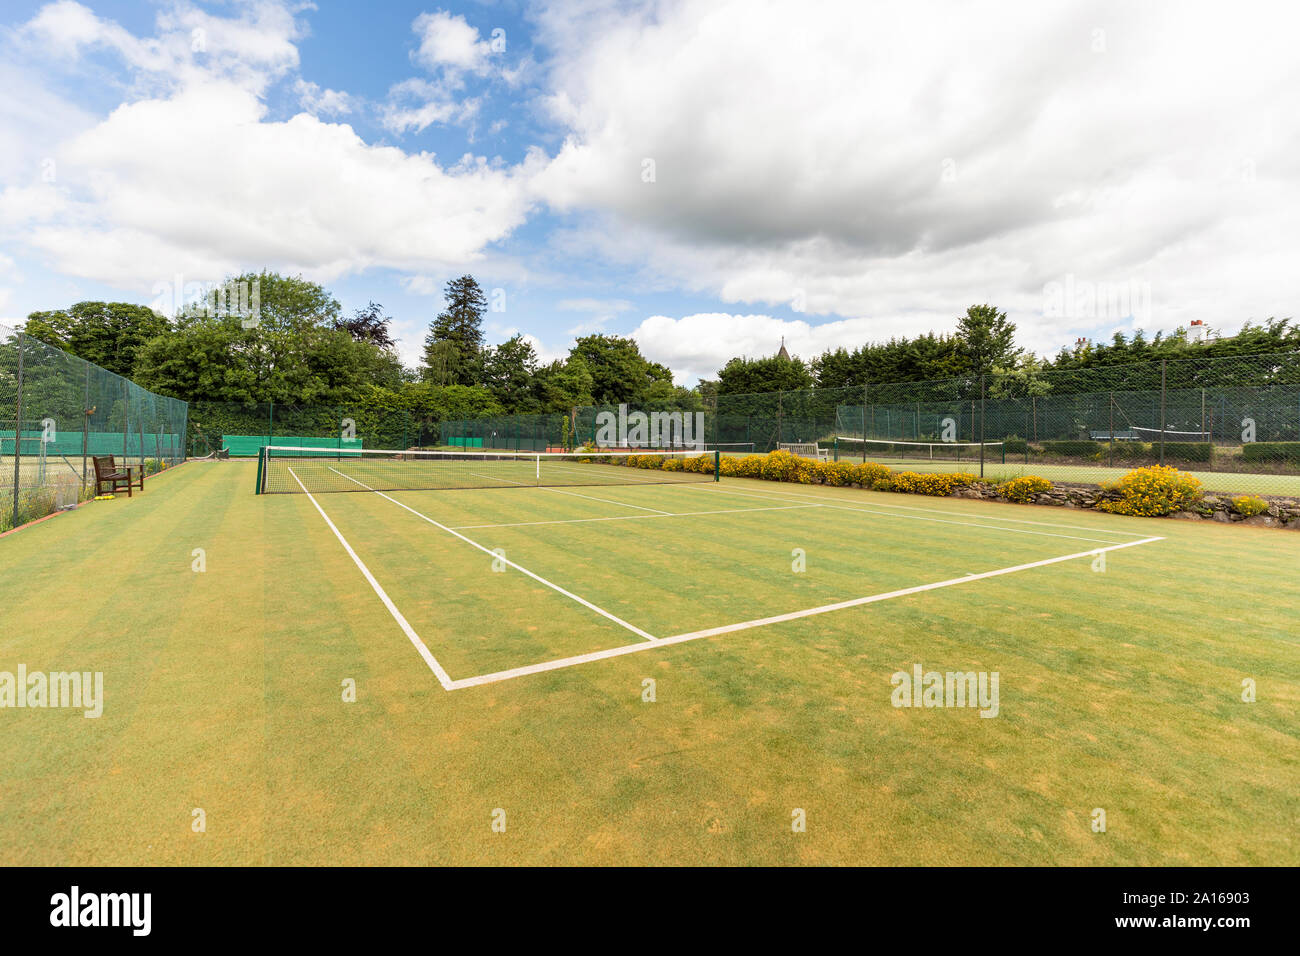 Green tennis avec sports net et seule ligne marquage contre ciel nuageux Banque D'Images